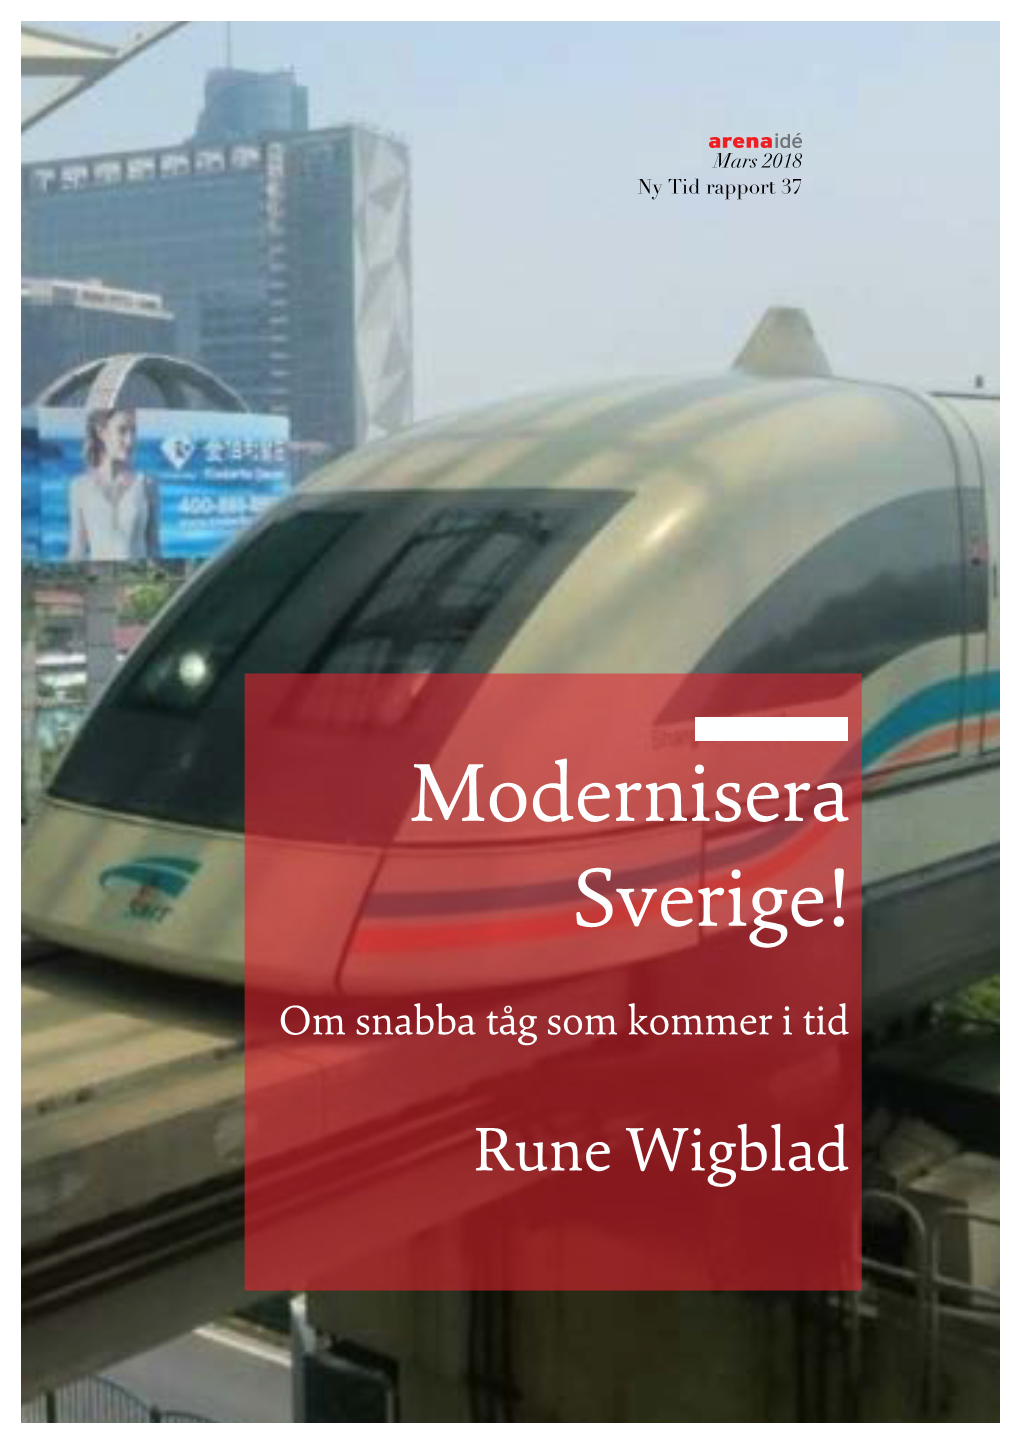 Magnettag-Rapport-Rune-Wigblad.Pdf